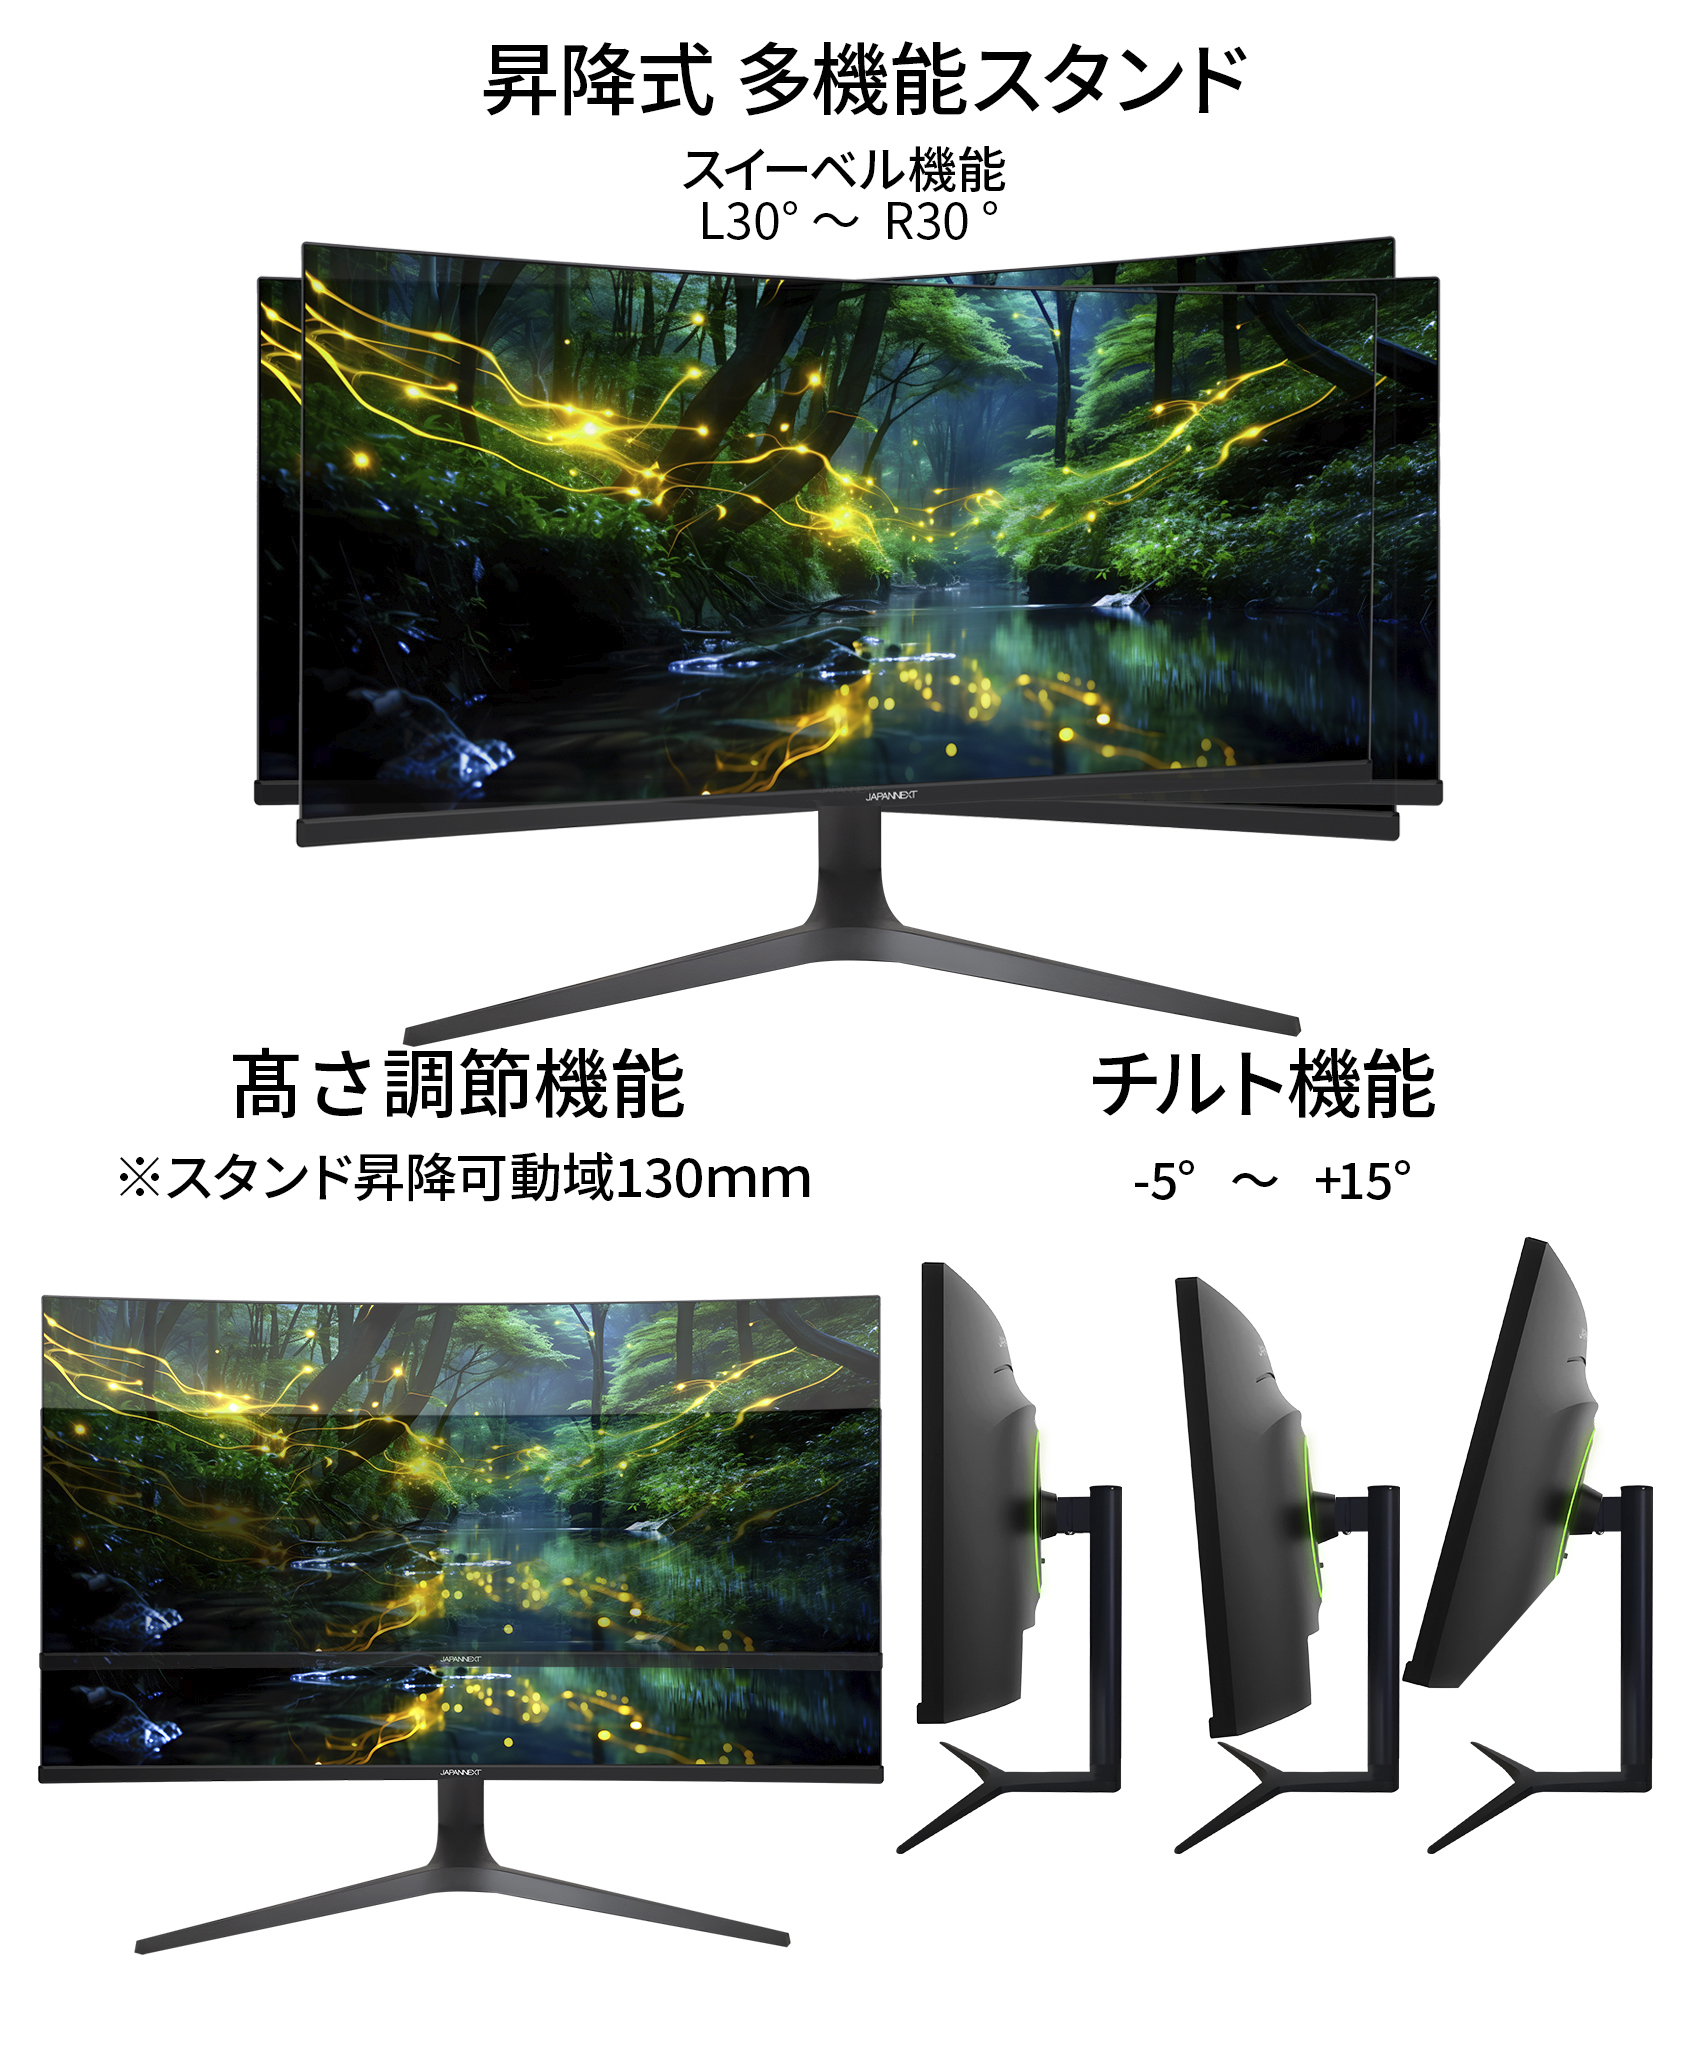 JAPANNEXT 34インチ曲面 IPSパネル UWQHD(3440 x 1440)解像度 ウルトラ 